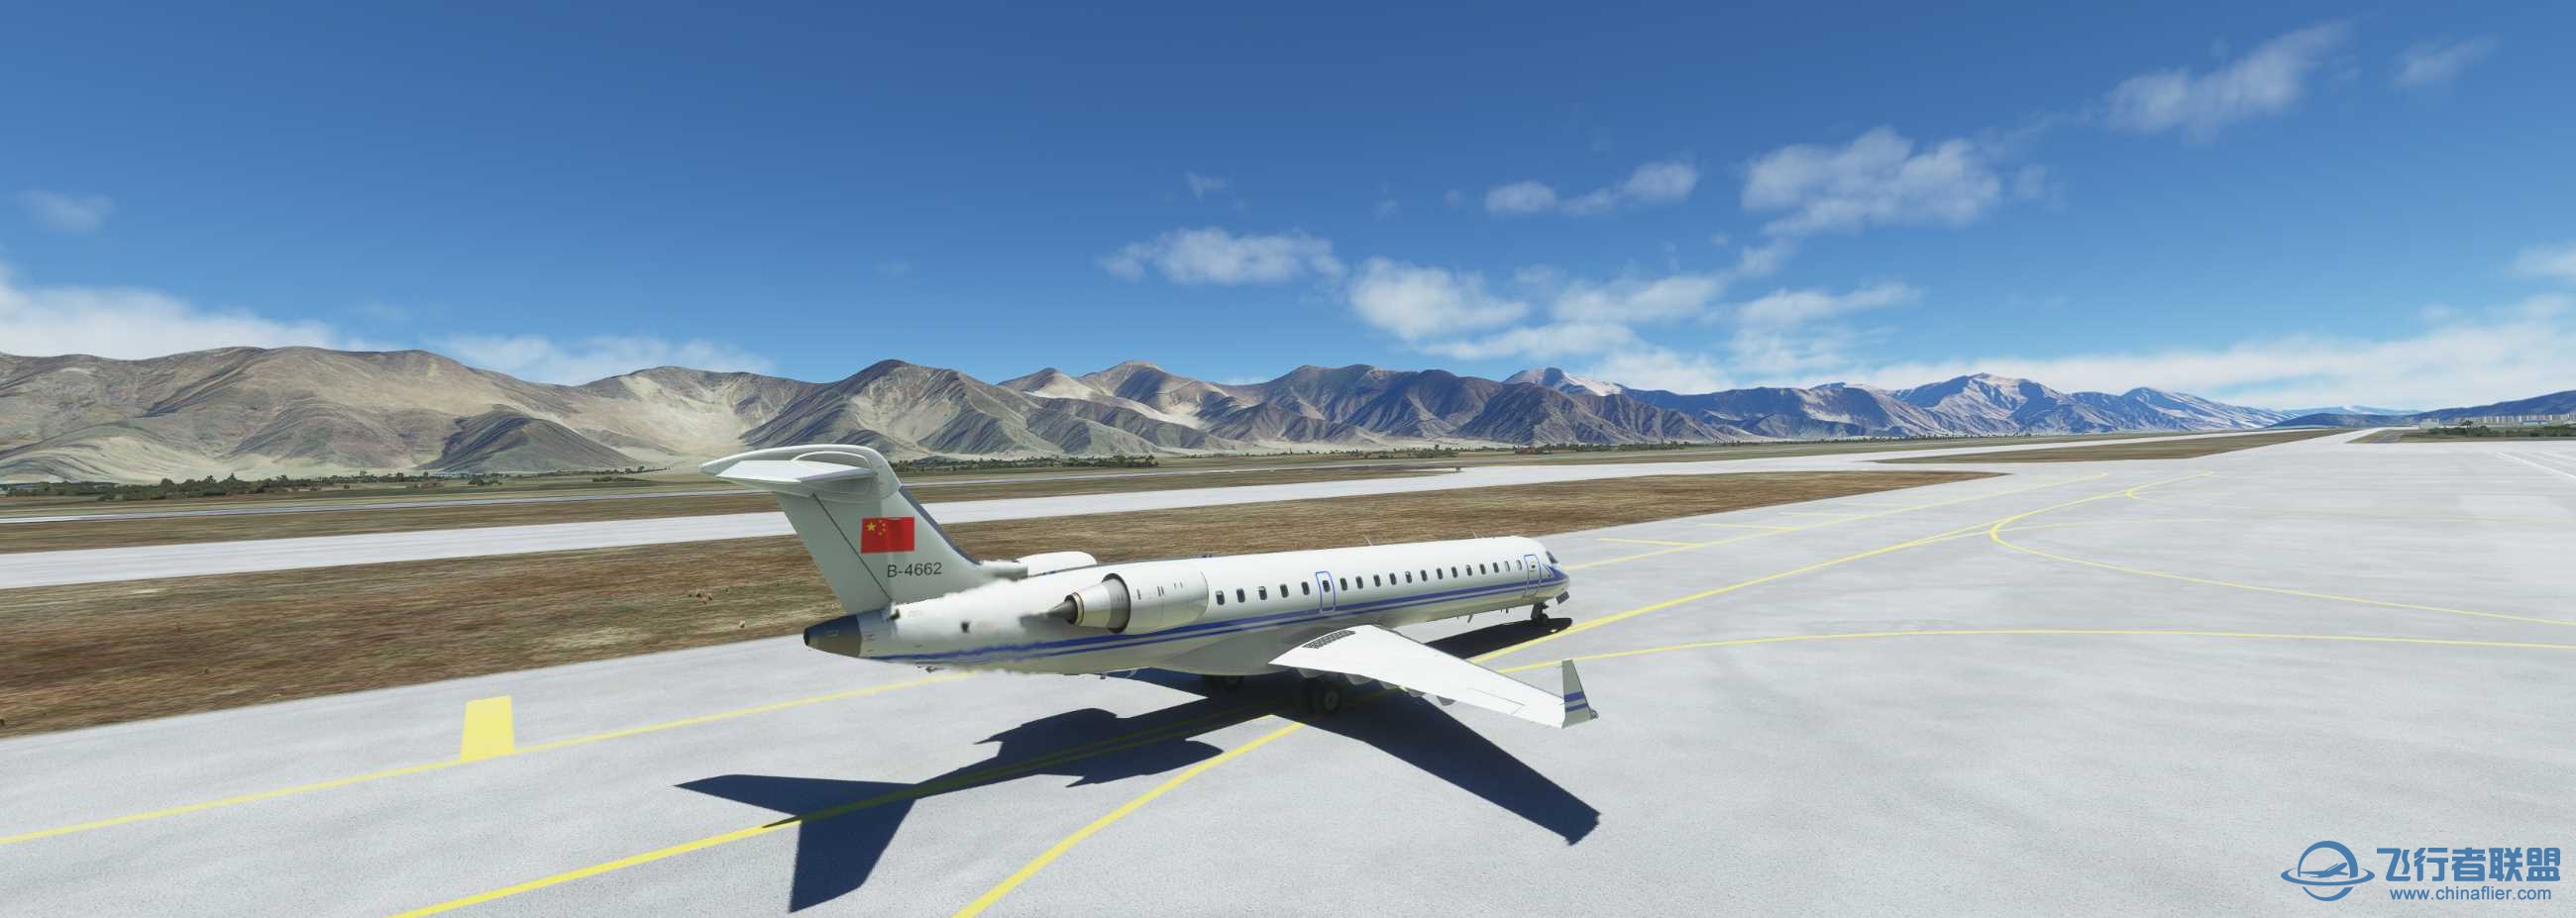 CRJ-700空军涂装 拉萨到香港-5851 